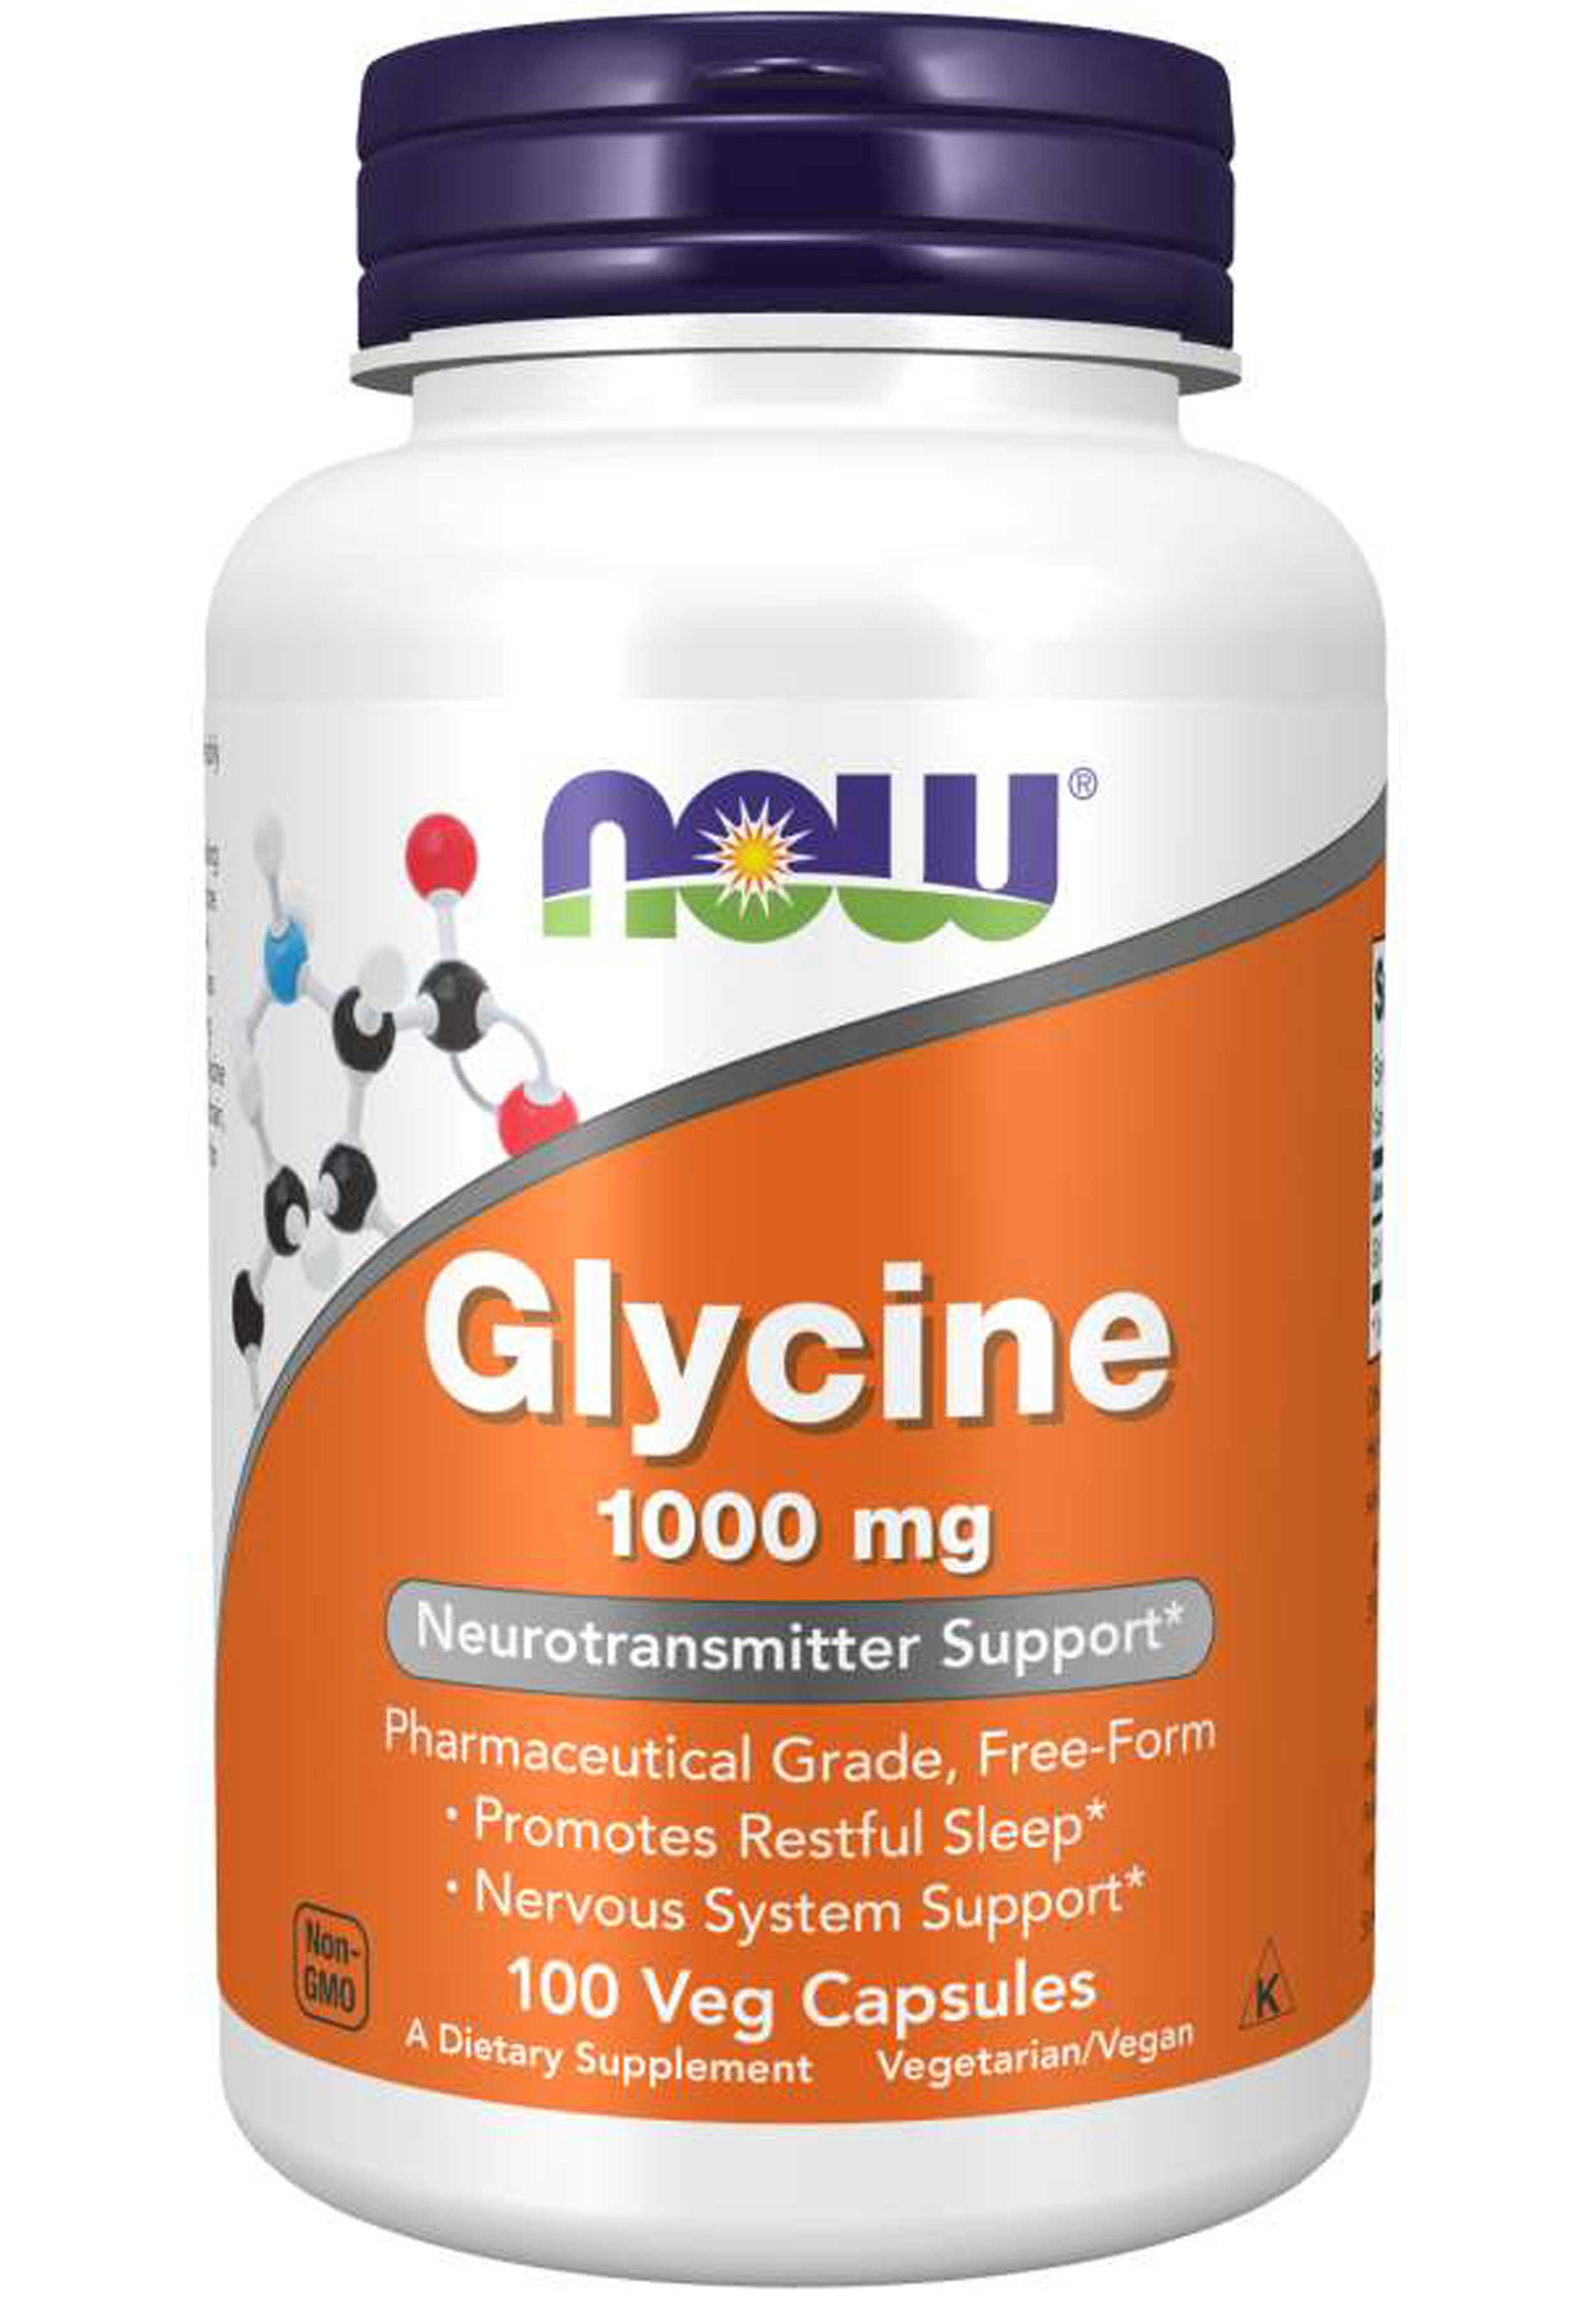 NOW Glycine 1000 mg